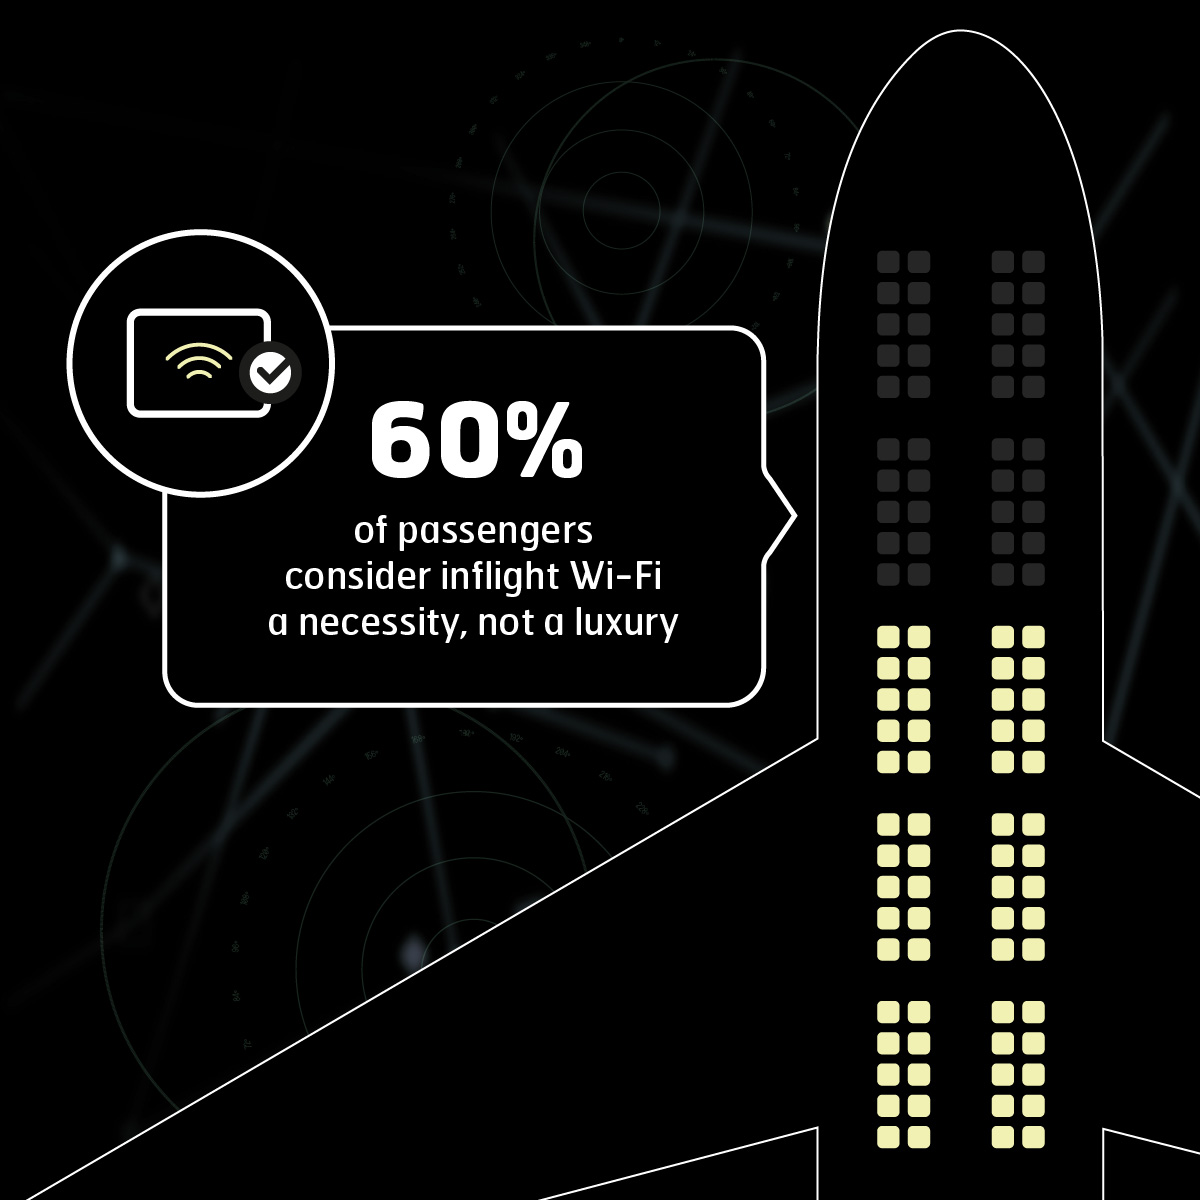 60%的旅客认为机上宽带是必须的，而不是奢侈的。